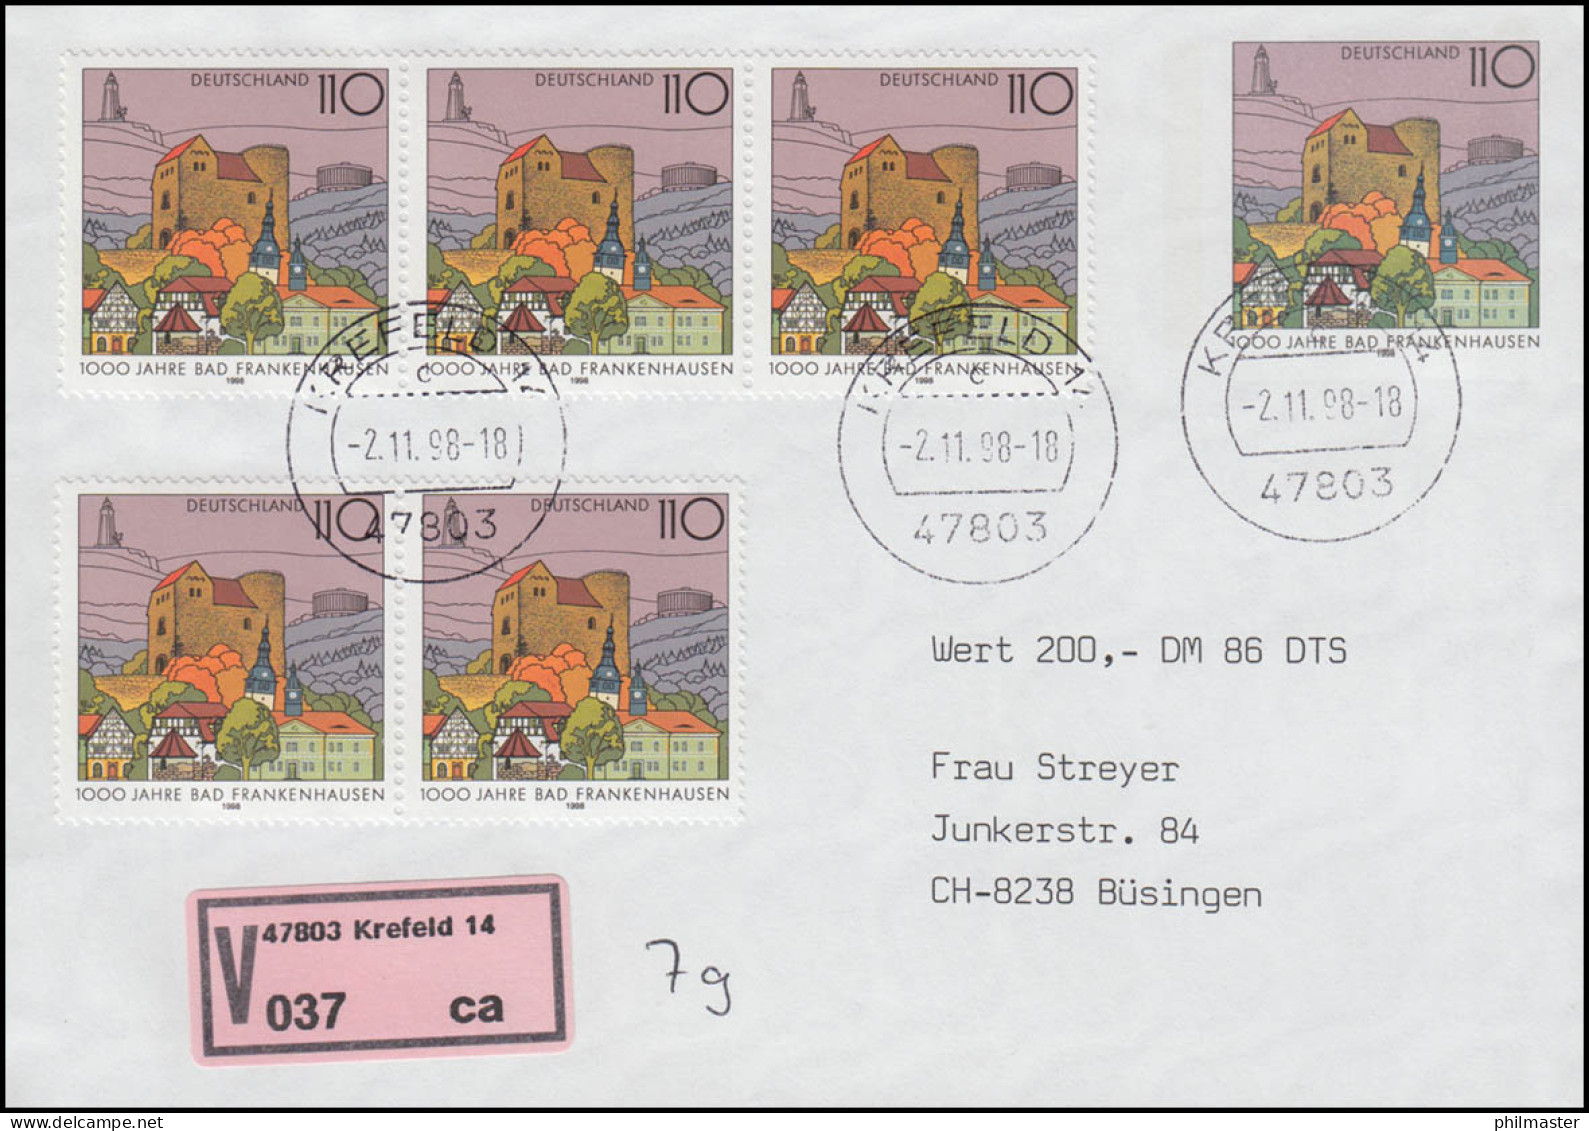 USo 5 AIIY Mit Passender Zusatzfrankatur 1978 Auf Wert-FDC Krefeld 2.11.98 - Covers - Mint